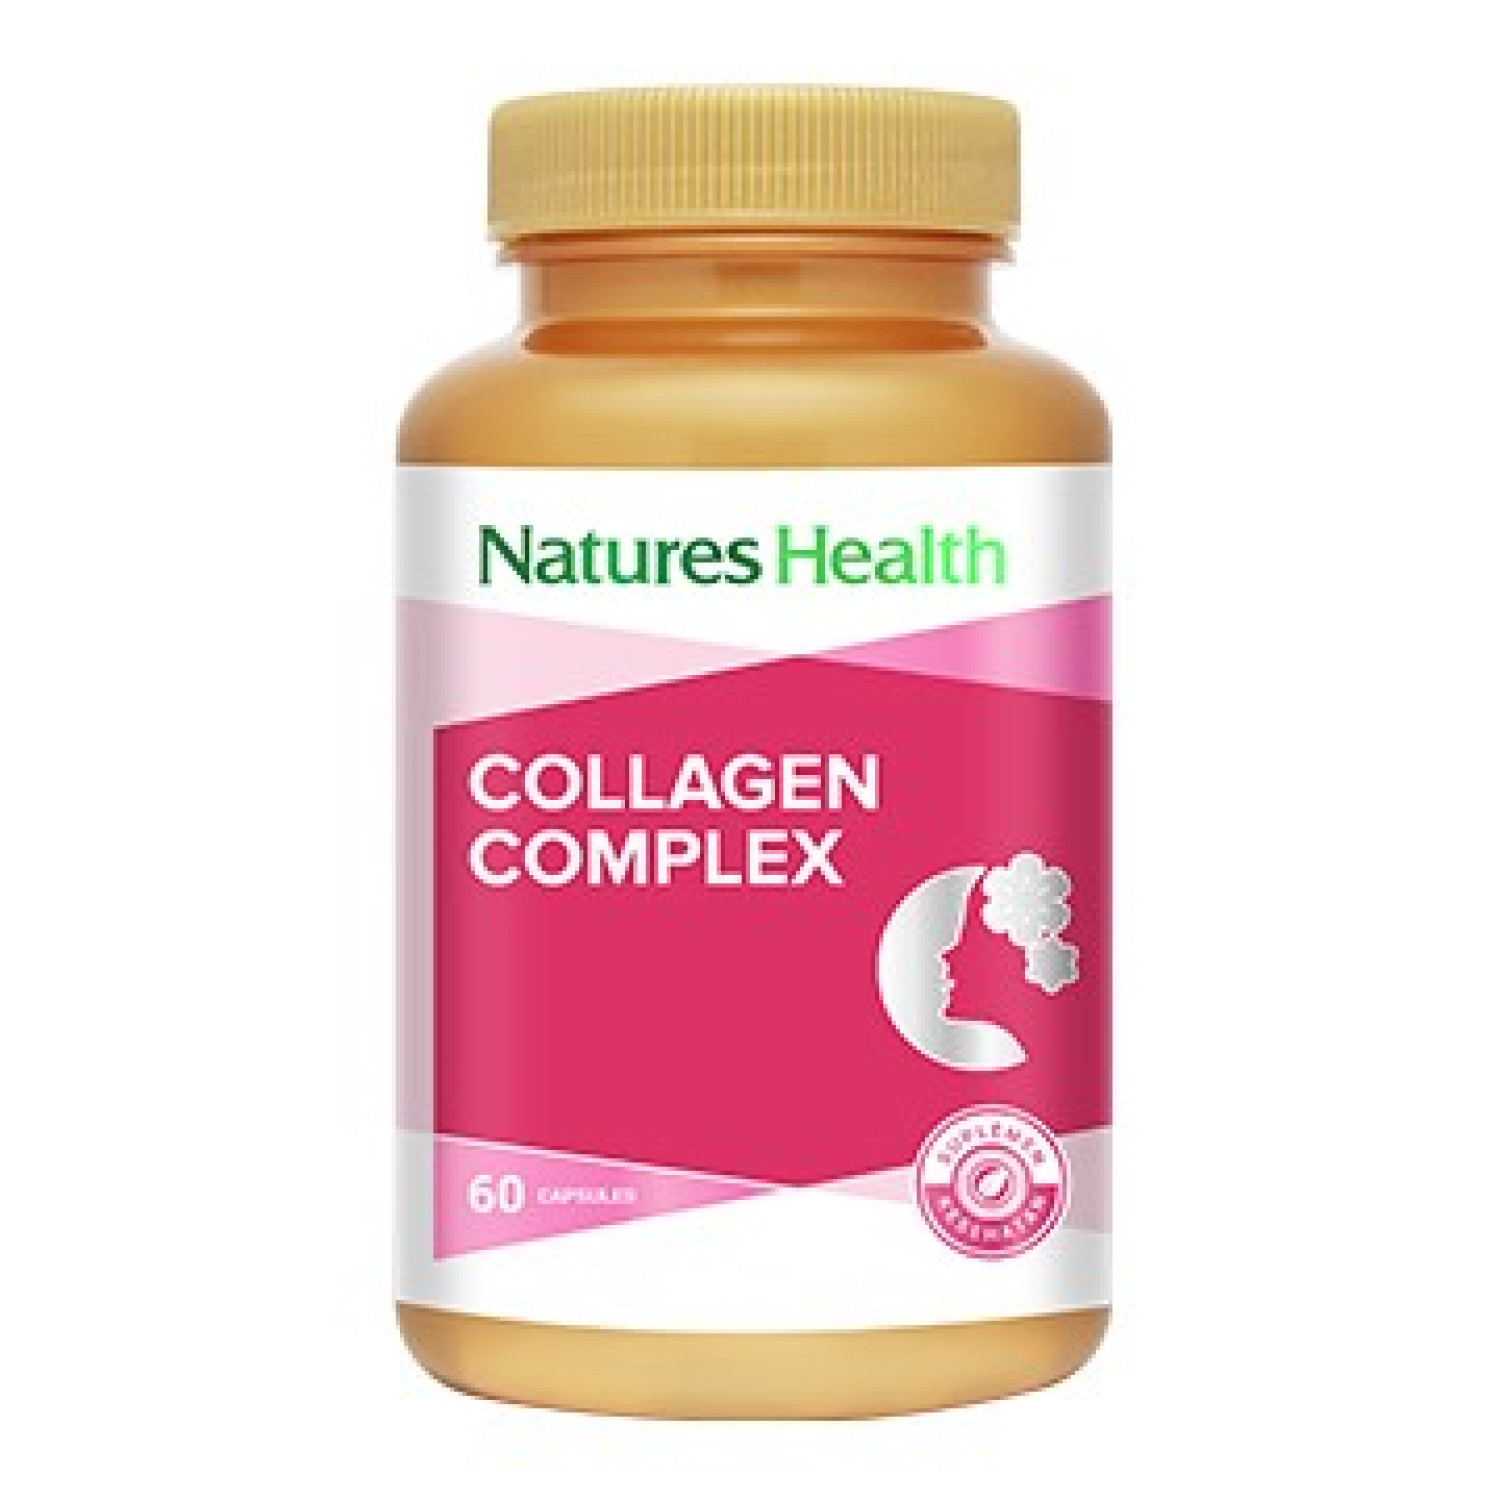 Natures Health Natures Health Collagen Complex